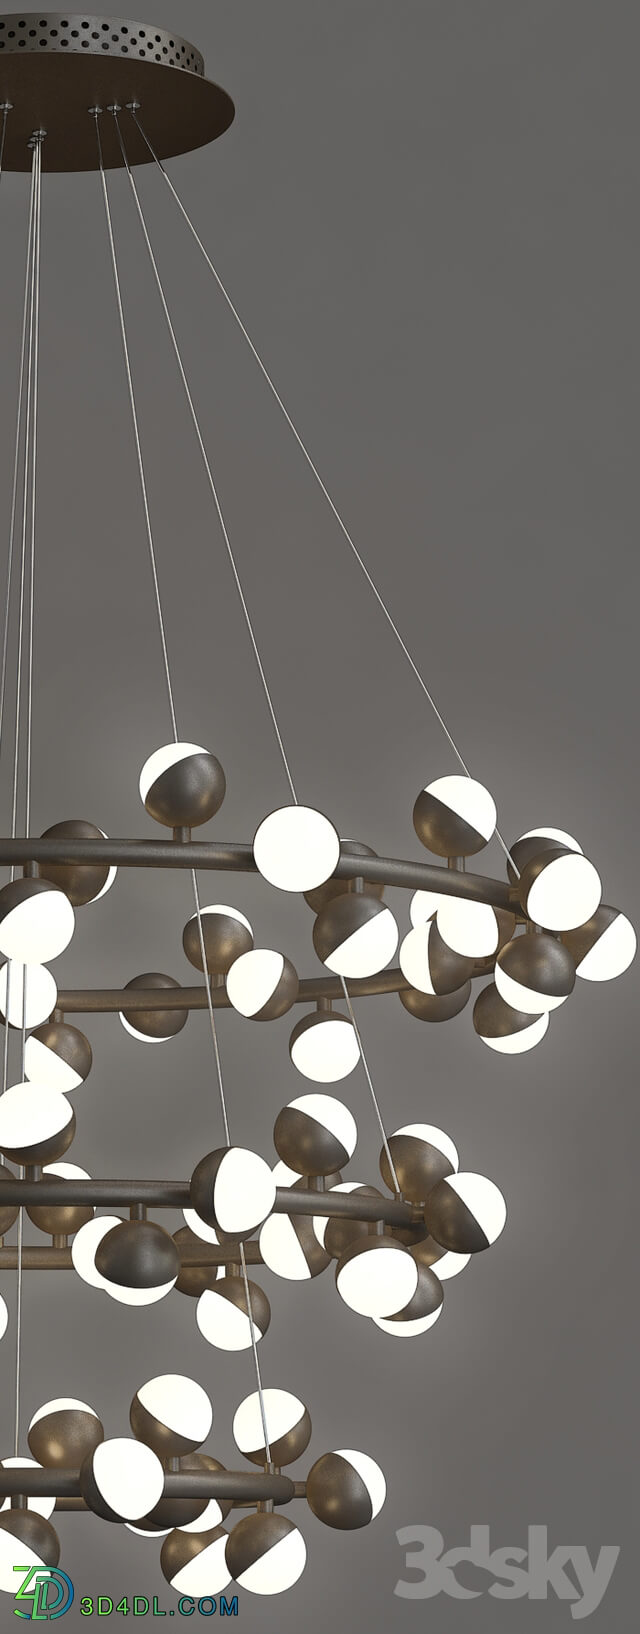 Ceiling light - Pendant Lights